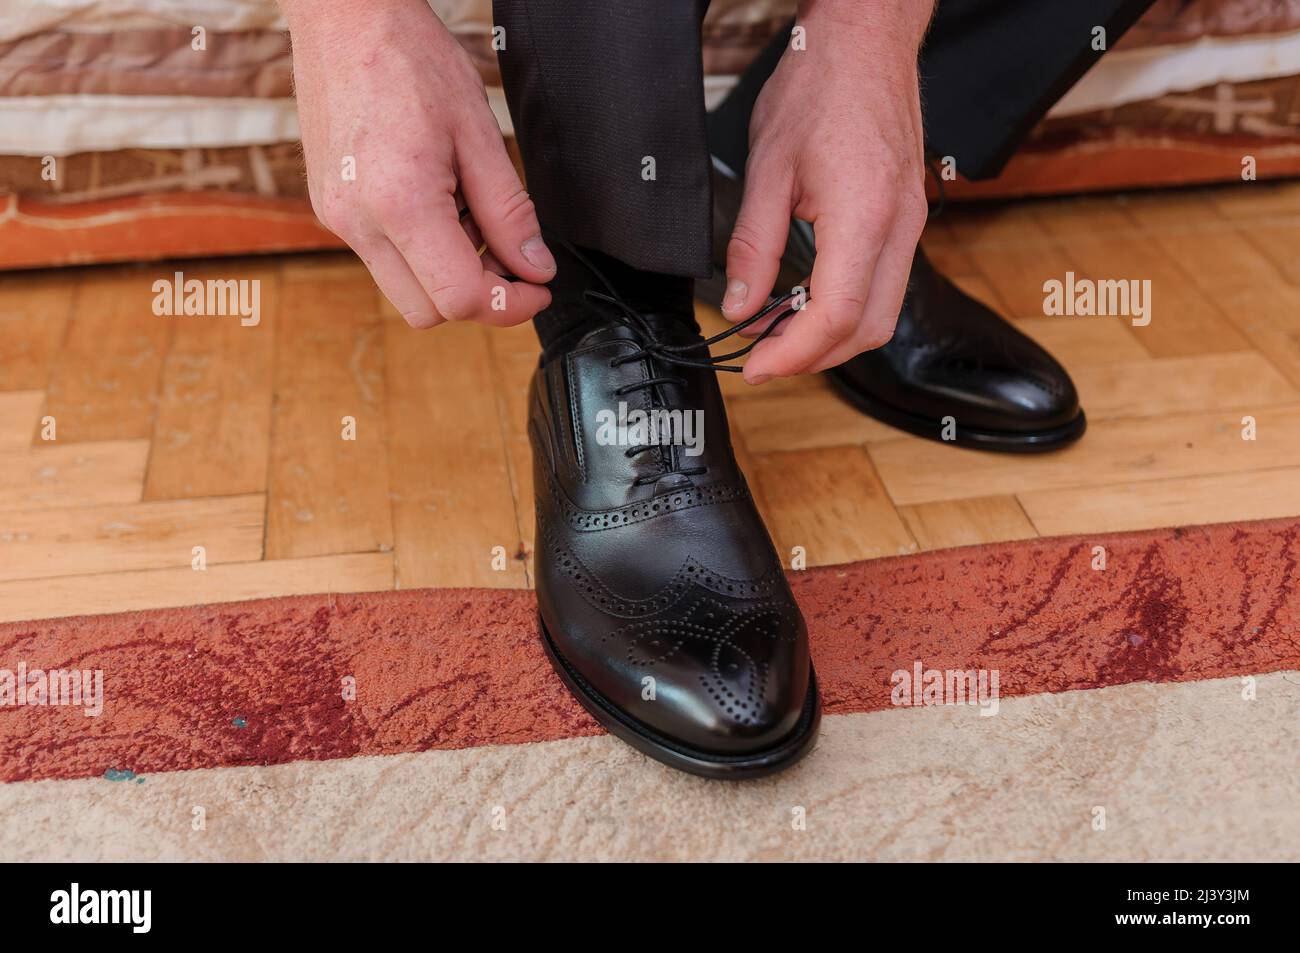 Homme nouant des lacets sur des chaussures en cuir Banque D'Images